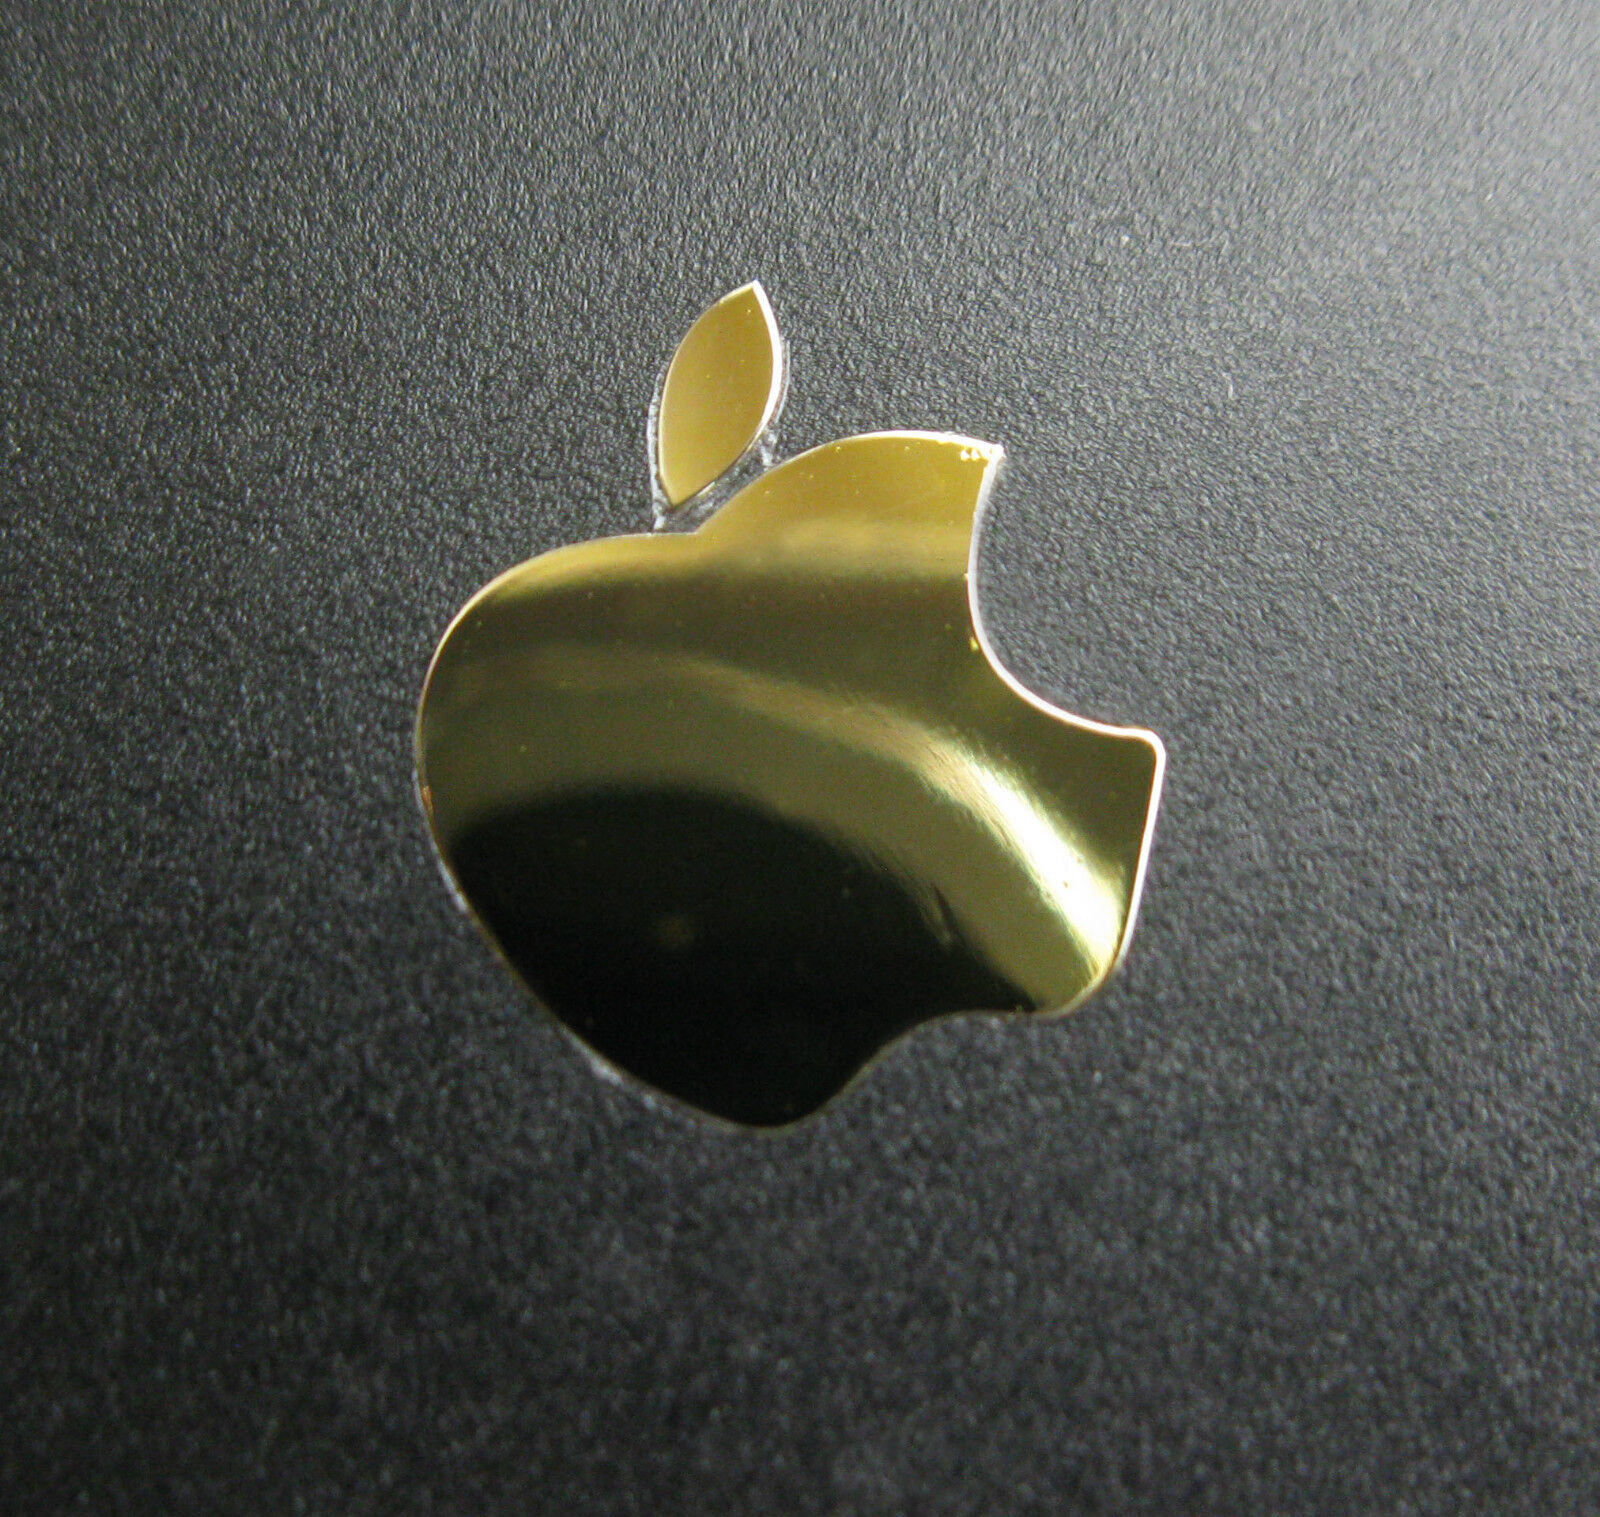 Apple Logo Label Aufkleber Sticker Badge Golden color decal 8mm x 10mm